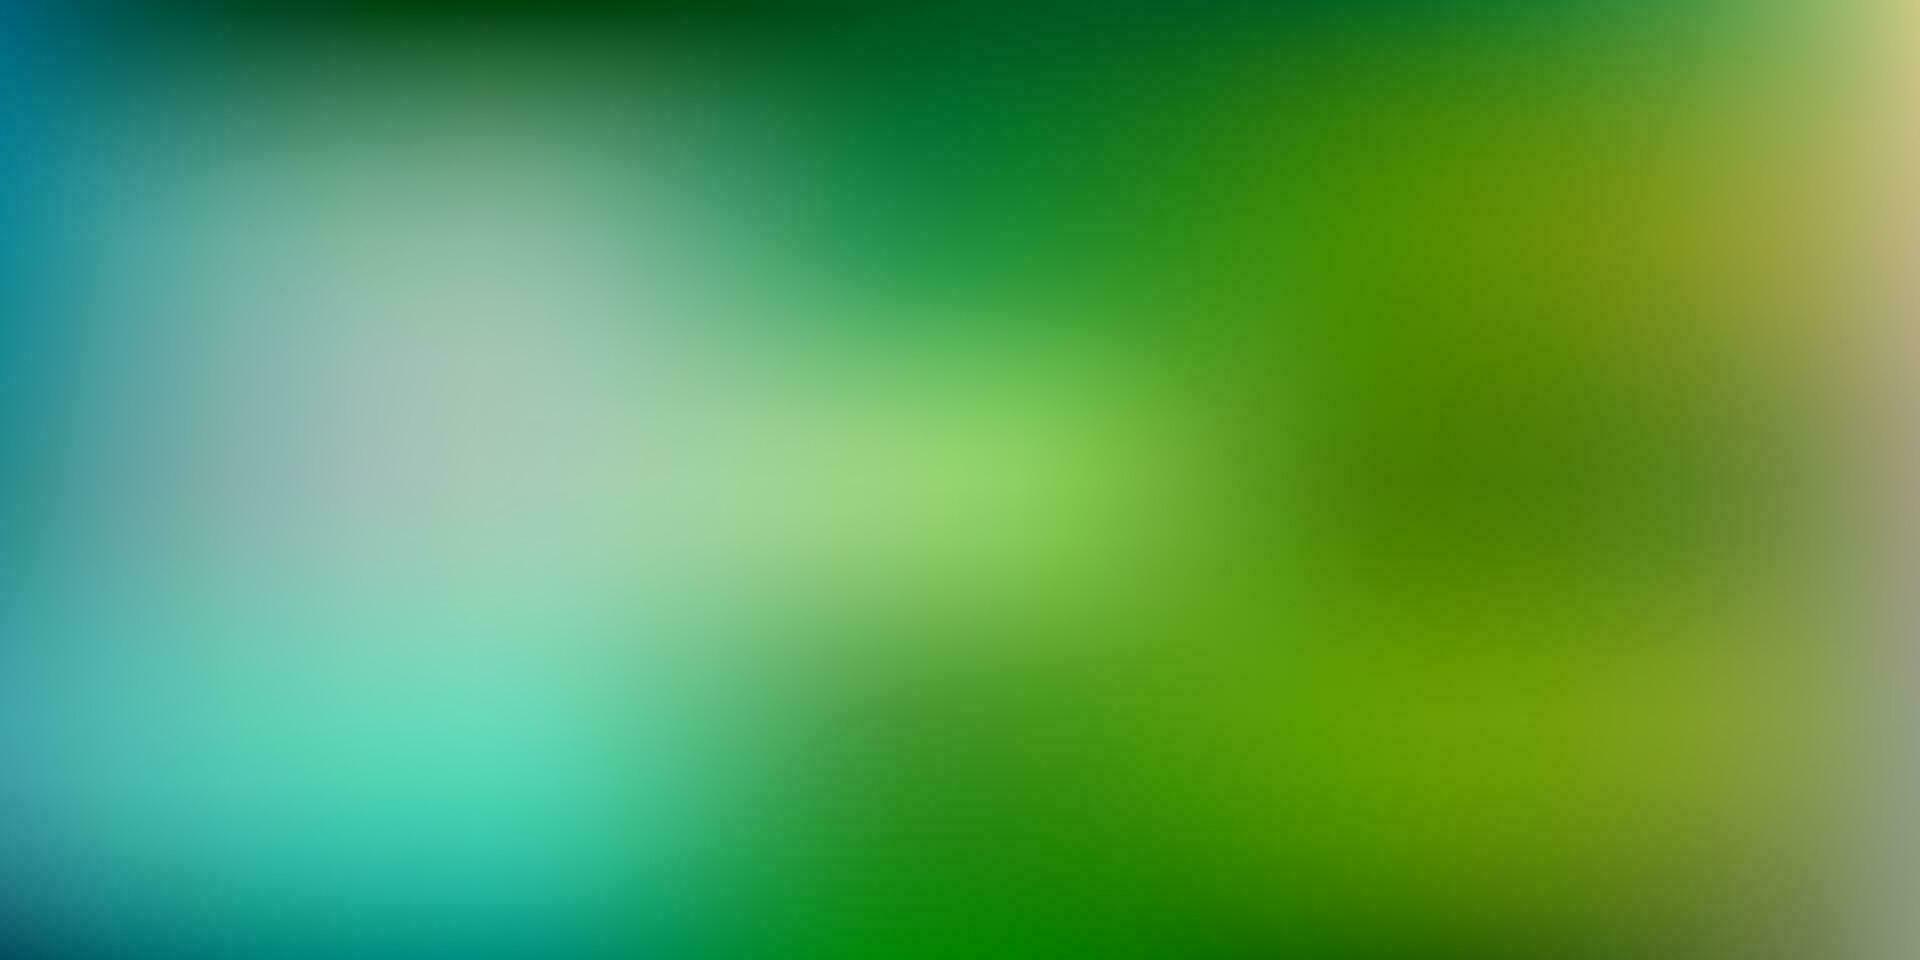 Light blue, green vector gradient blur pattern.